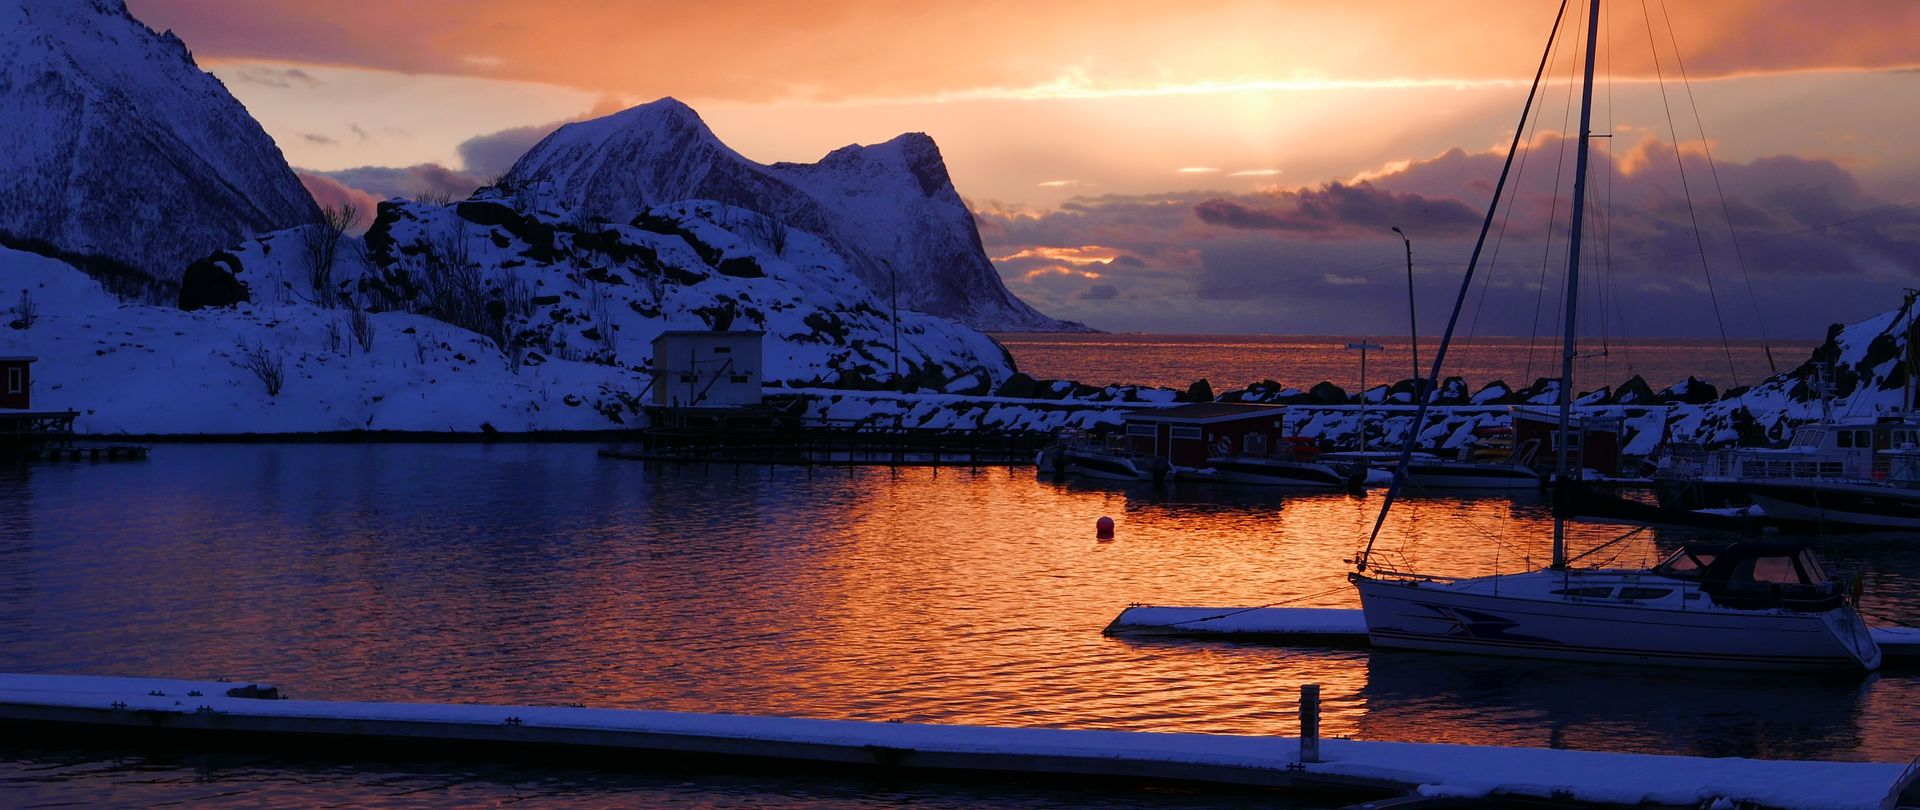 Les fjords norvégiens à la voile et en raquettes !